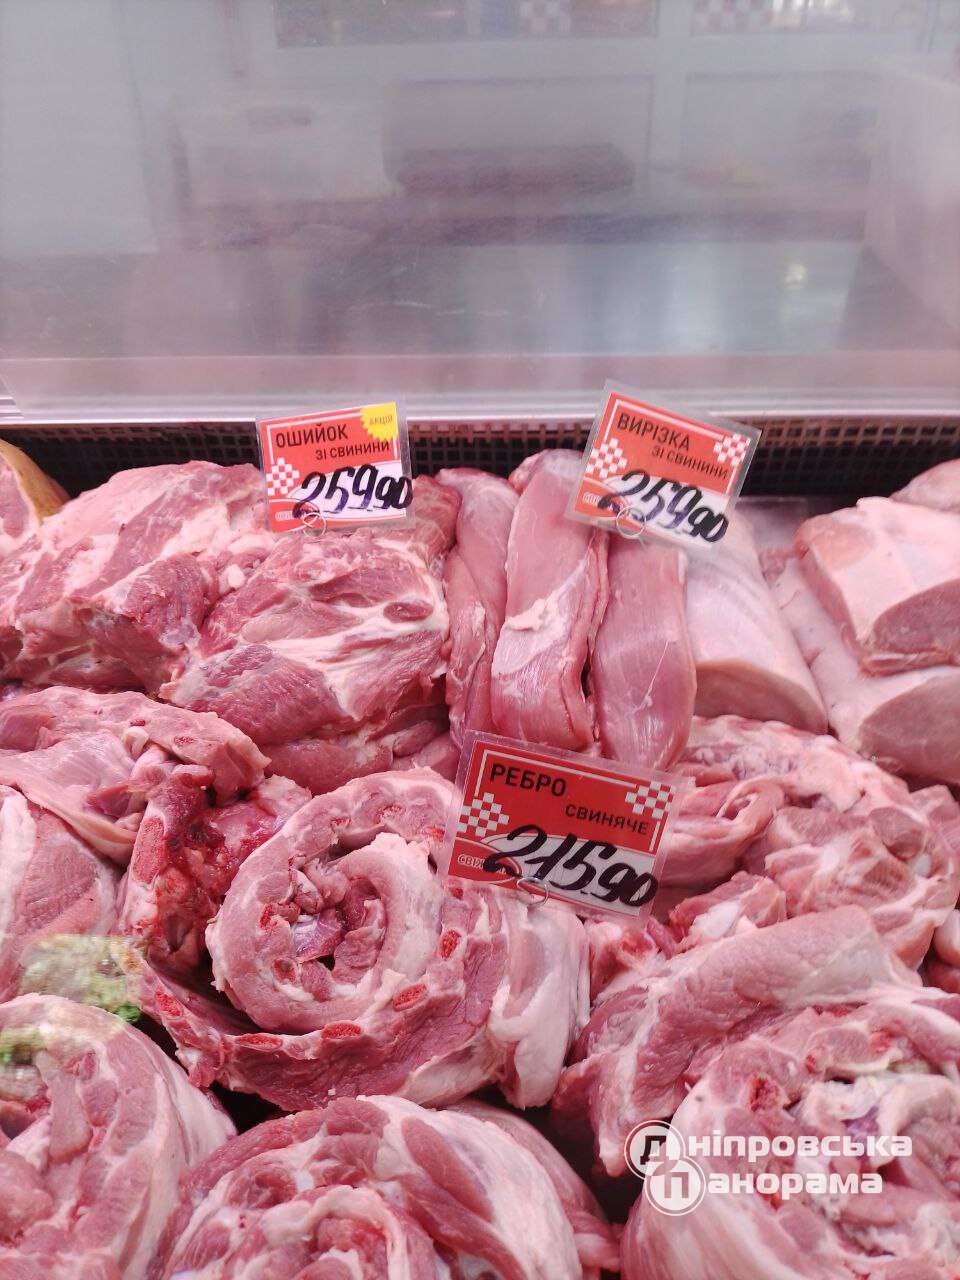 цены на мясо и сало Днепр